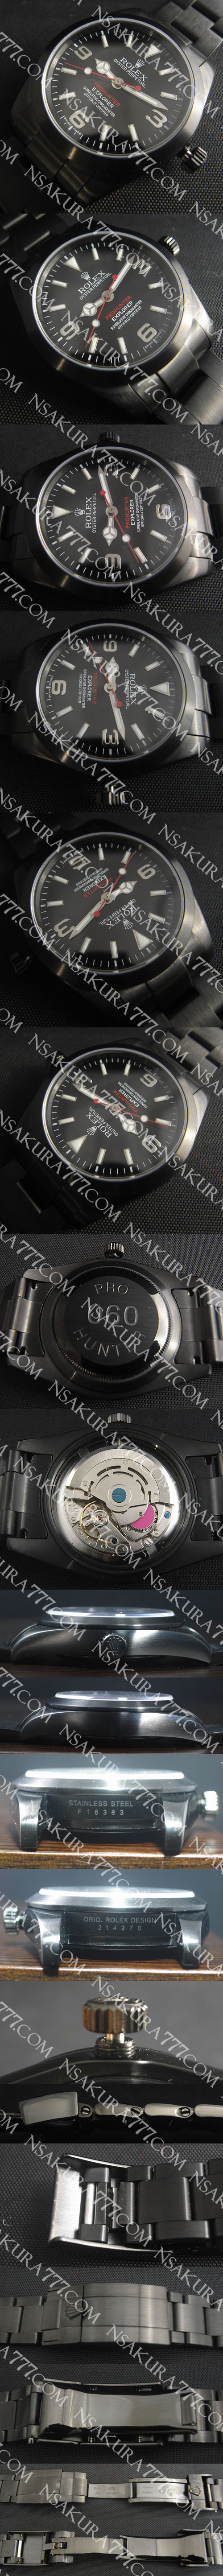 スーパーコピー時計ロレックス プロハンター エクスプローラー，39ミリ，Asain21600 振動 - ウインドウを閉じる